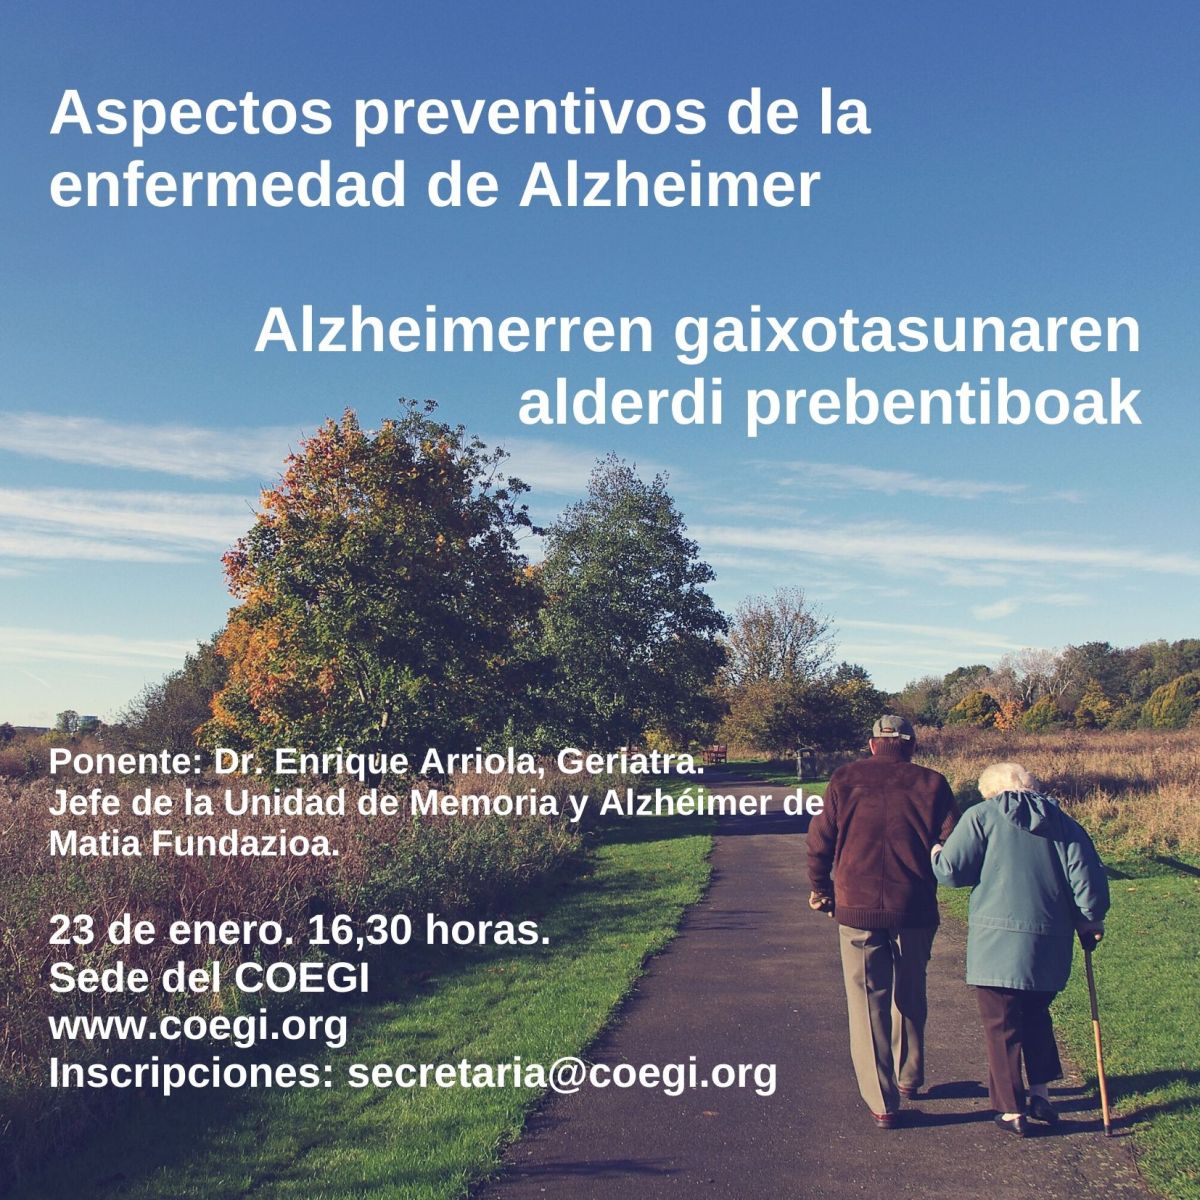 Imagen anunciante de charla sobre aspectos preventivos de la enfermedad de Alzheimer